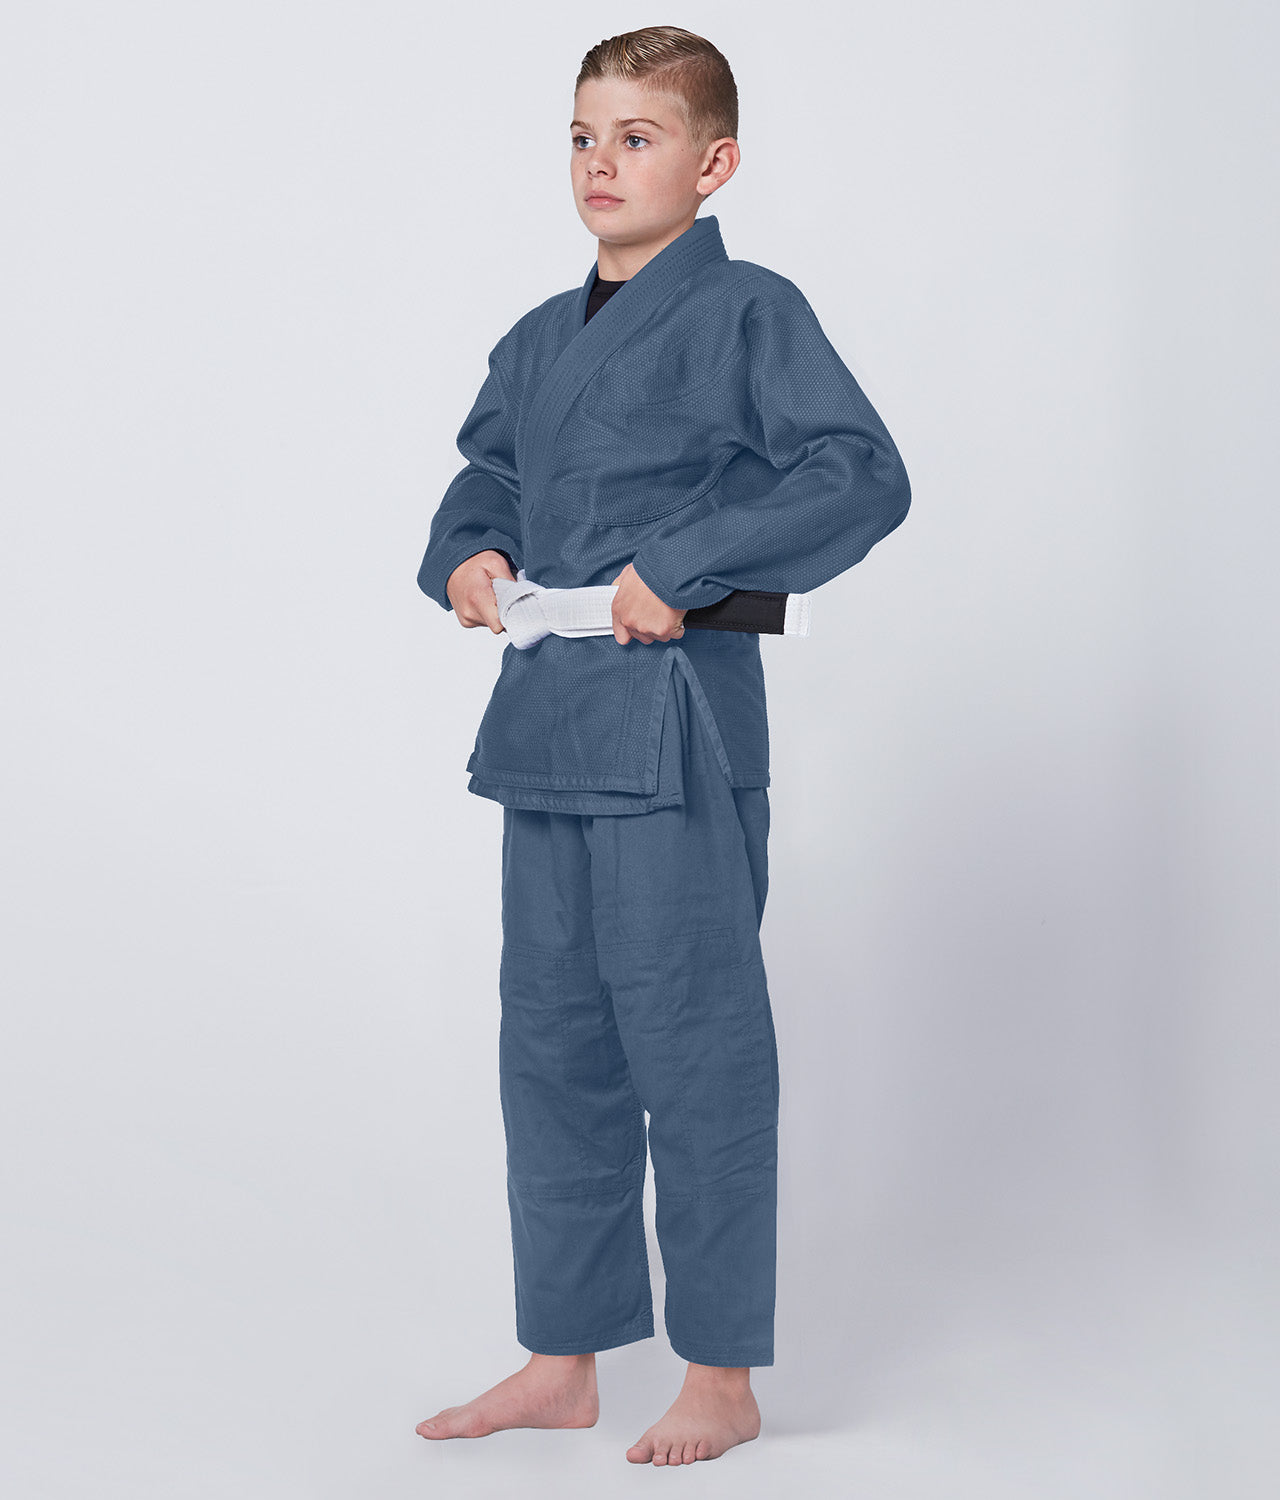 Elite Sports Kids' Essential Gray Brazilian Jiu Jitsu BJJ Gi Side View